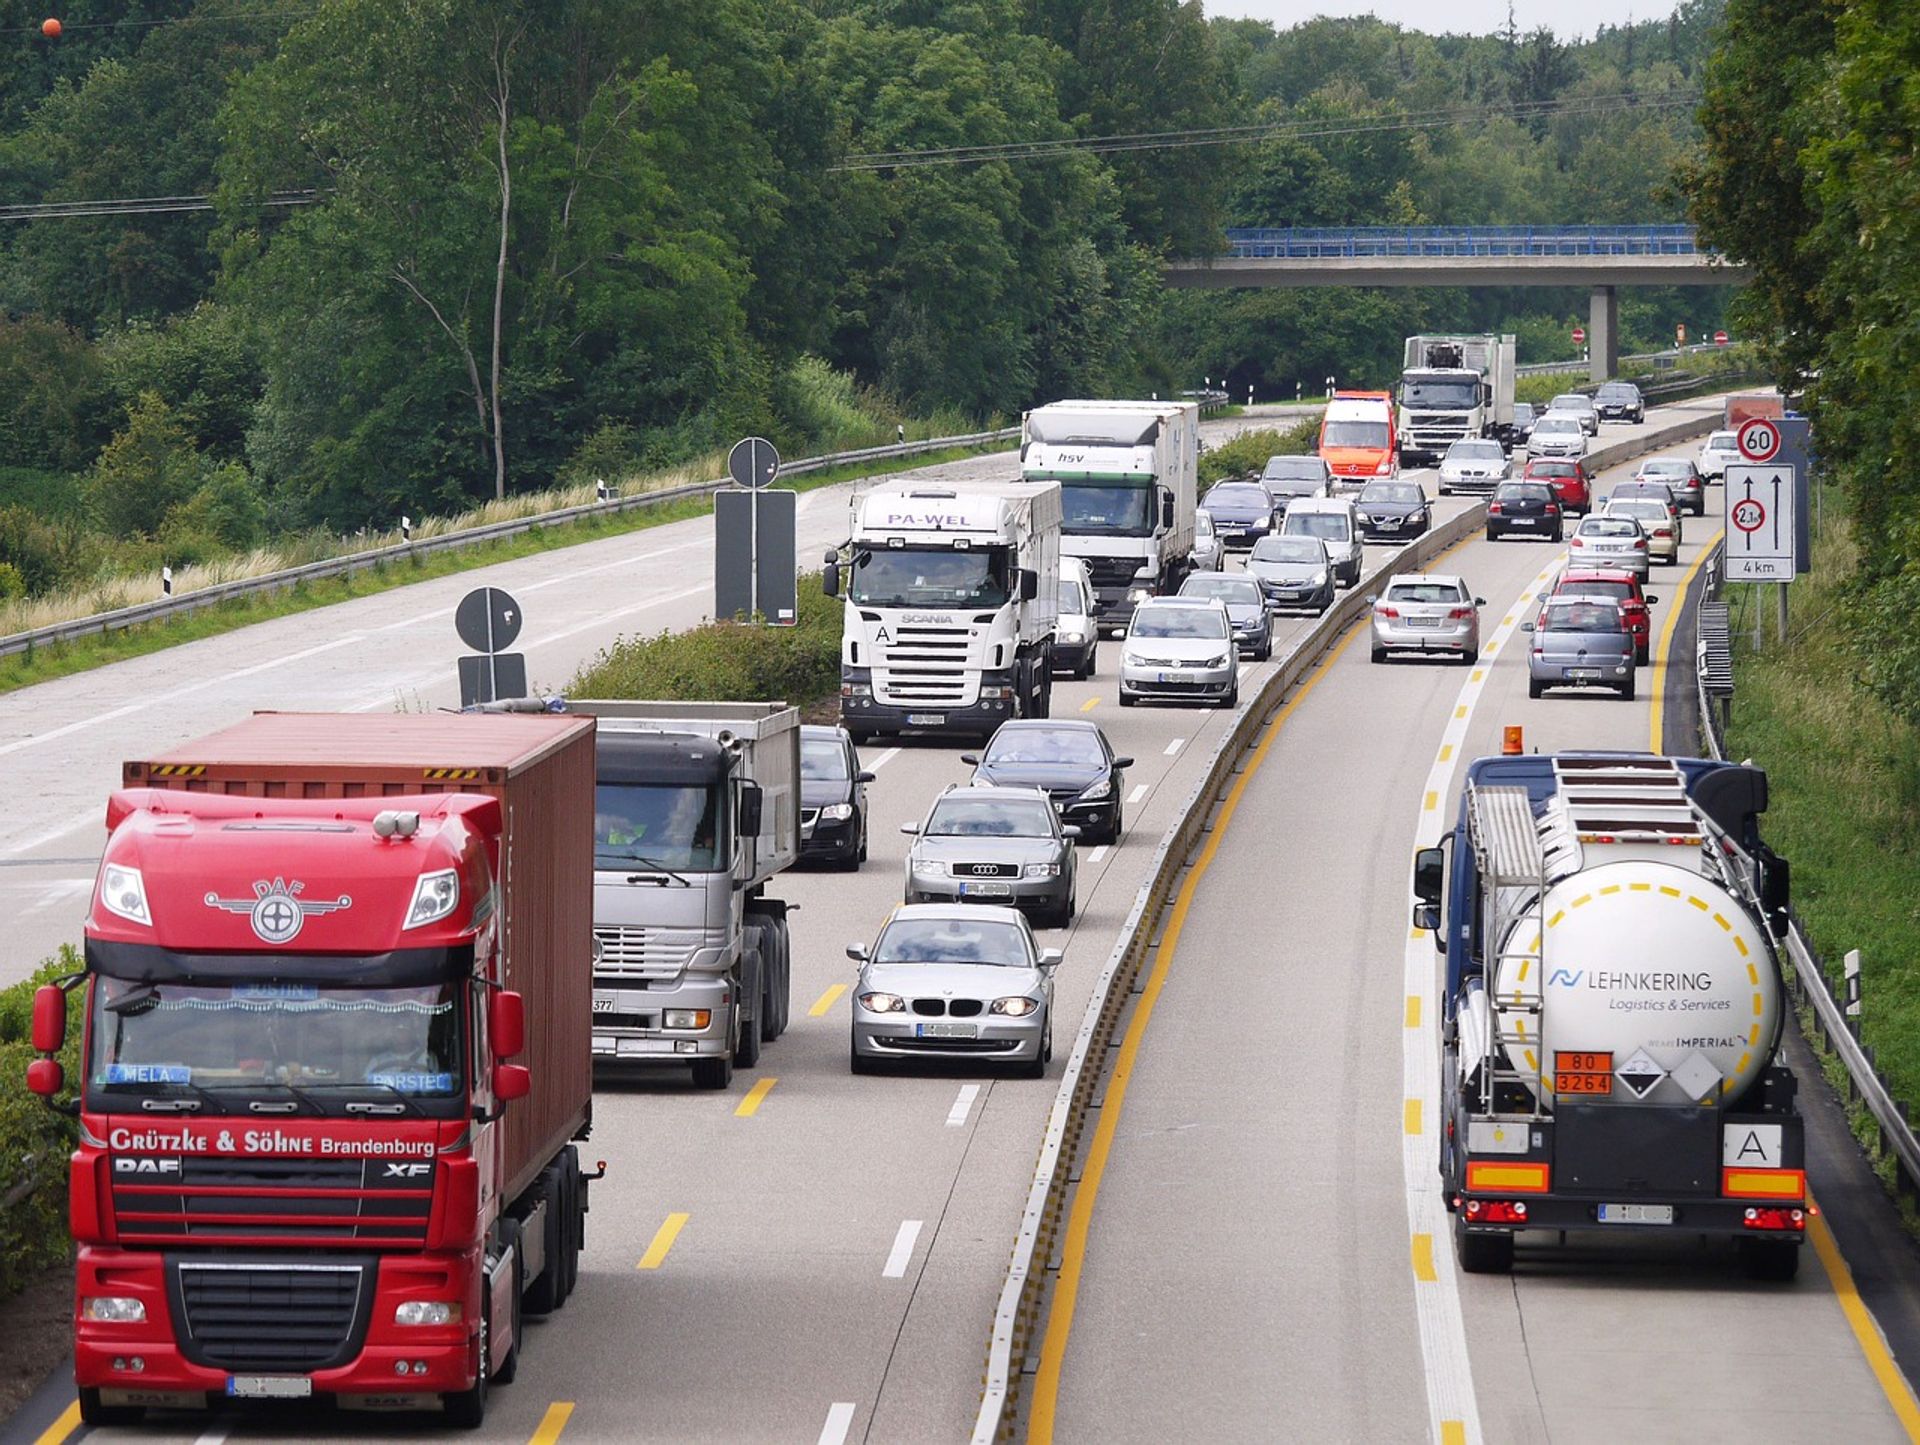 Czy polski transport drogowy utrzyma pozycję lidera w UE?